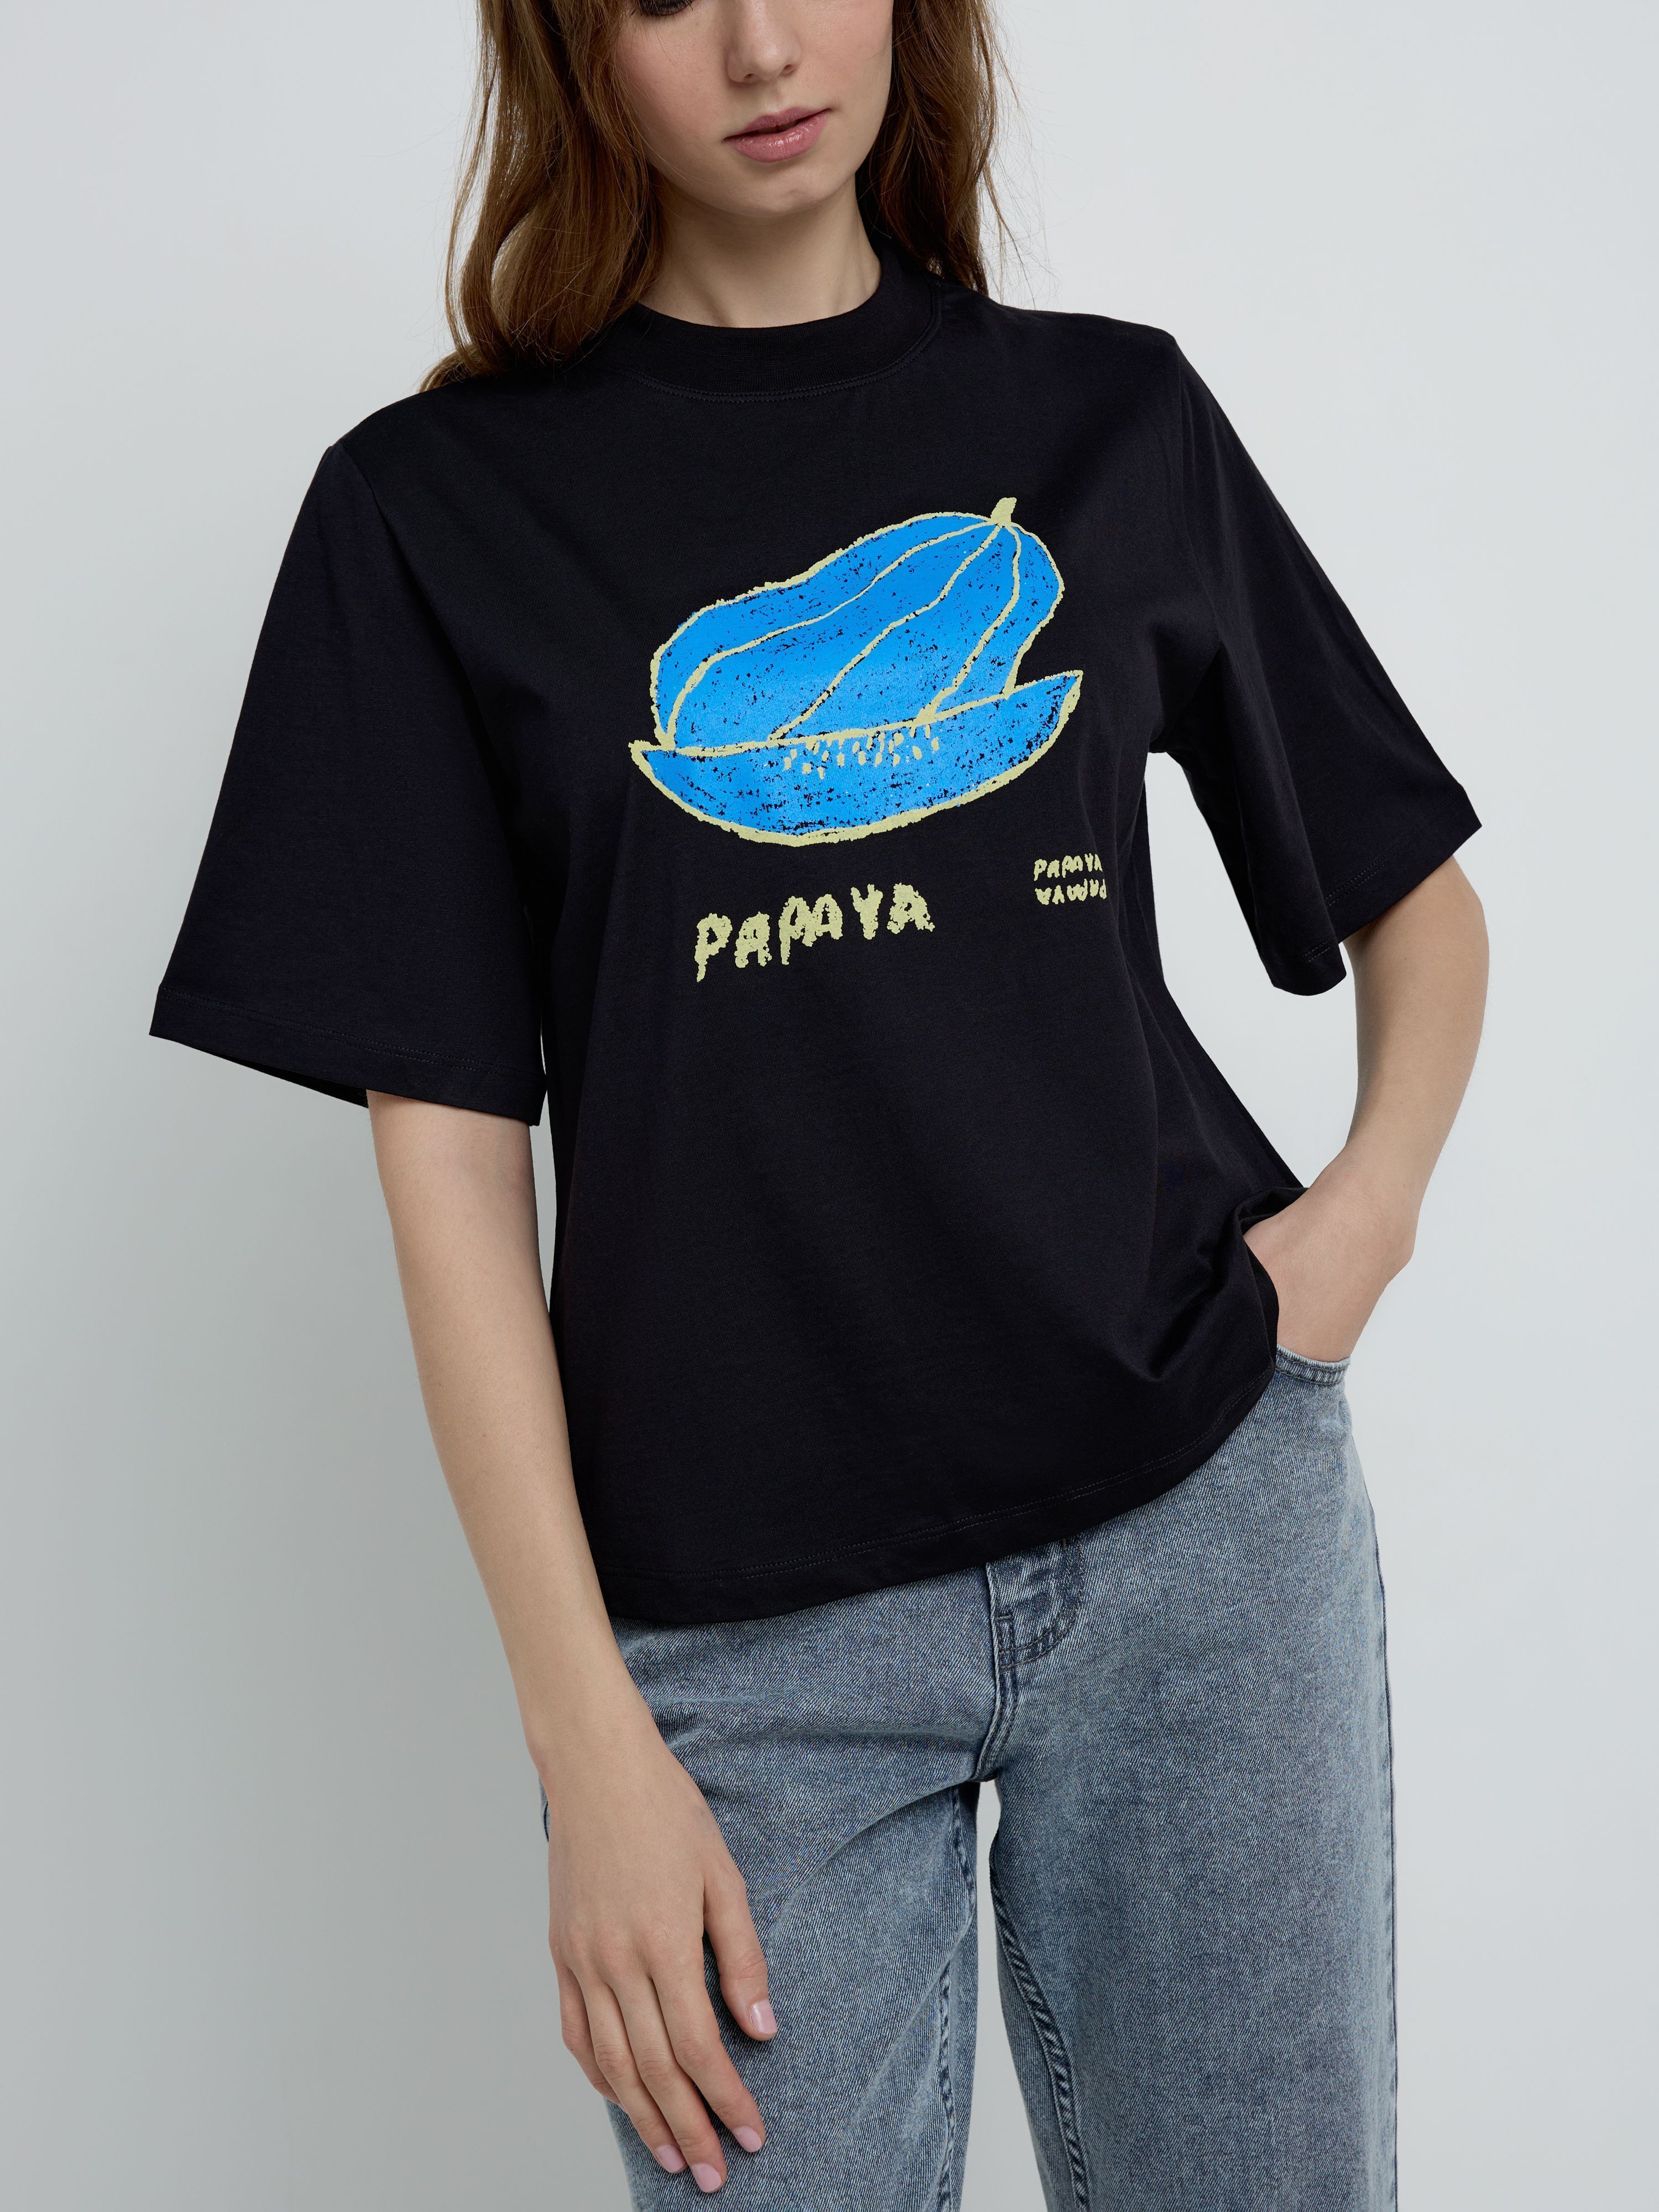 Свободная футболка из хлопка с рисунком «Papaya» LD 2099 Conte ⭐️, цвет white, размер 170-100/xl - фото 1